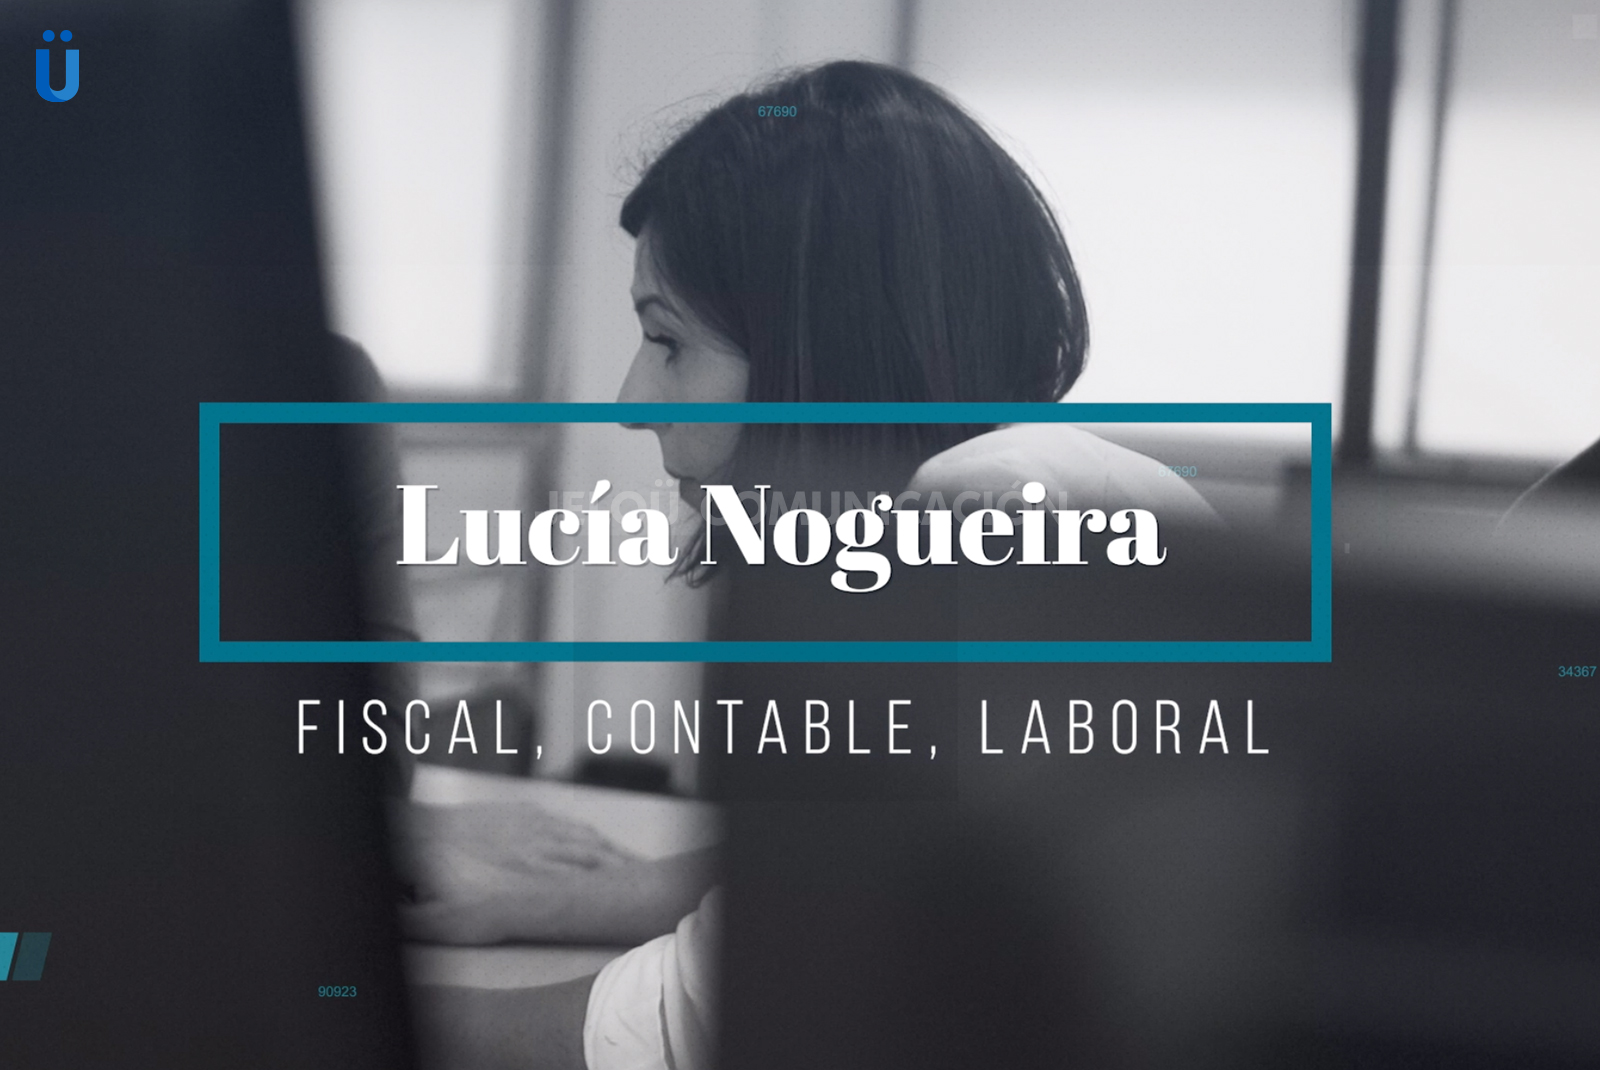 Jeloü Comunicación LUcía Nogueira video